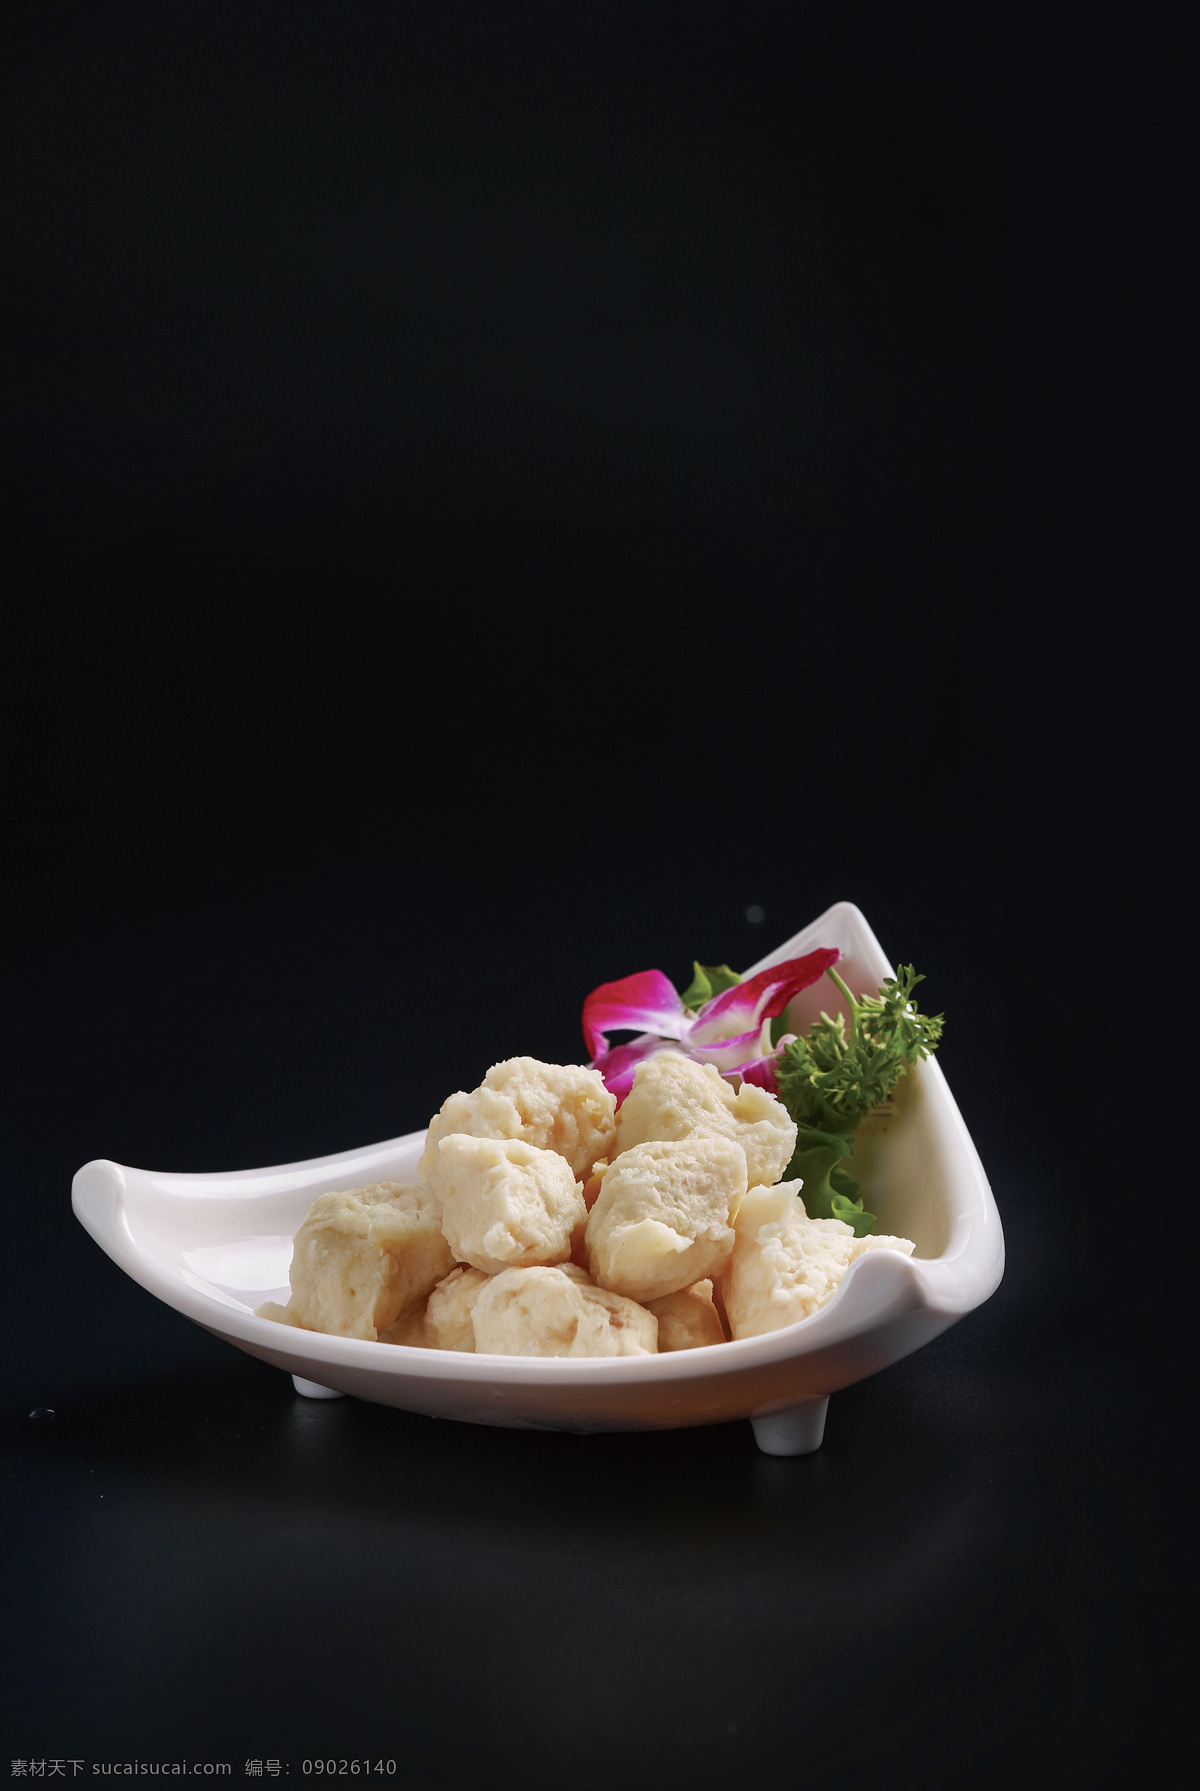 墨鱼丸 鱼丸 火锅 涮丸子 美食 美味 青菜 餐饮美食 传统美食